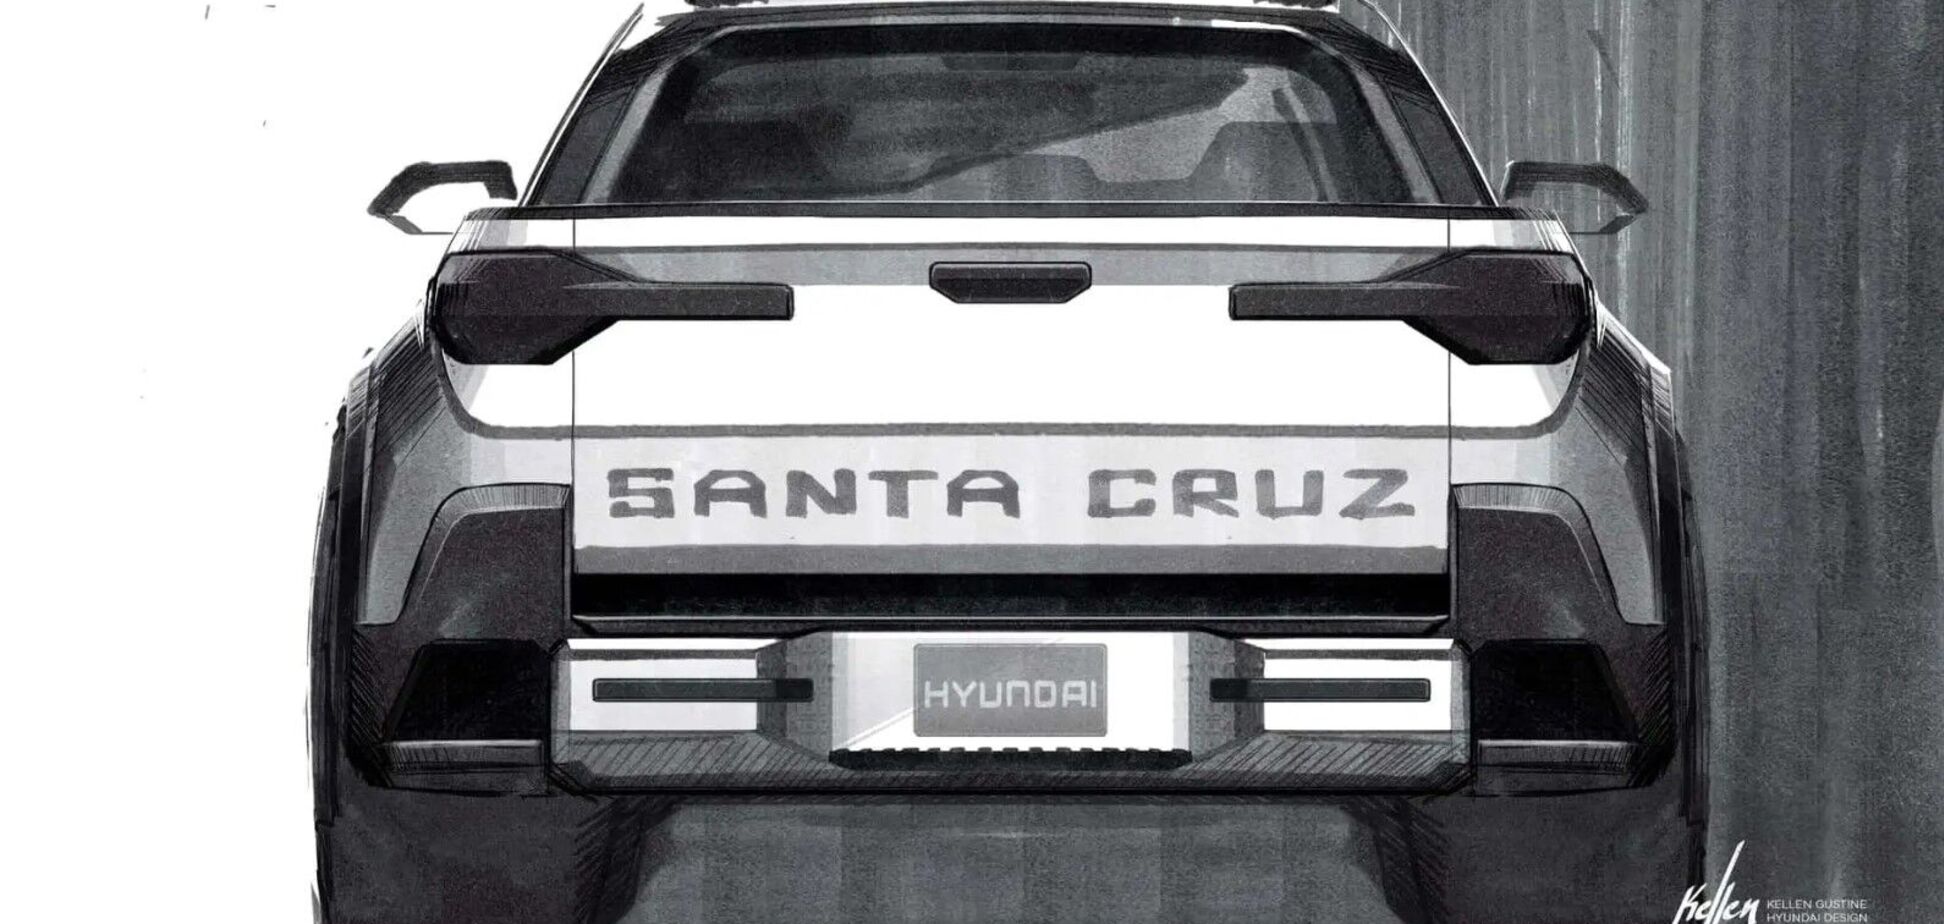 Hyundai Santa Cruz